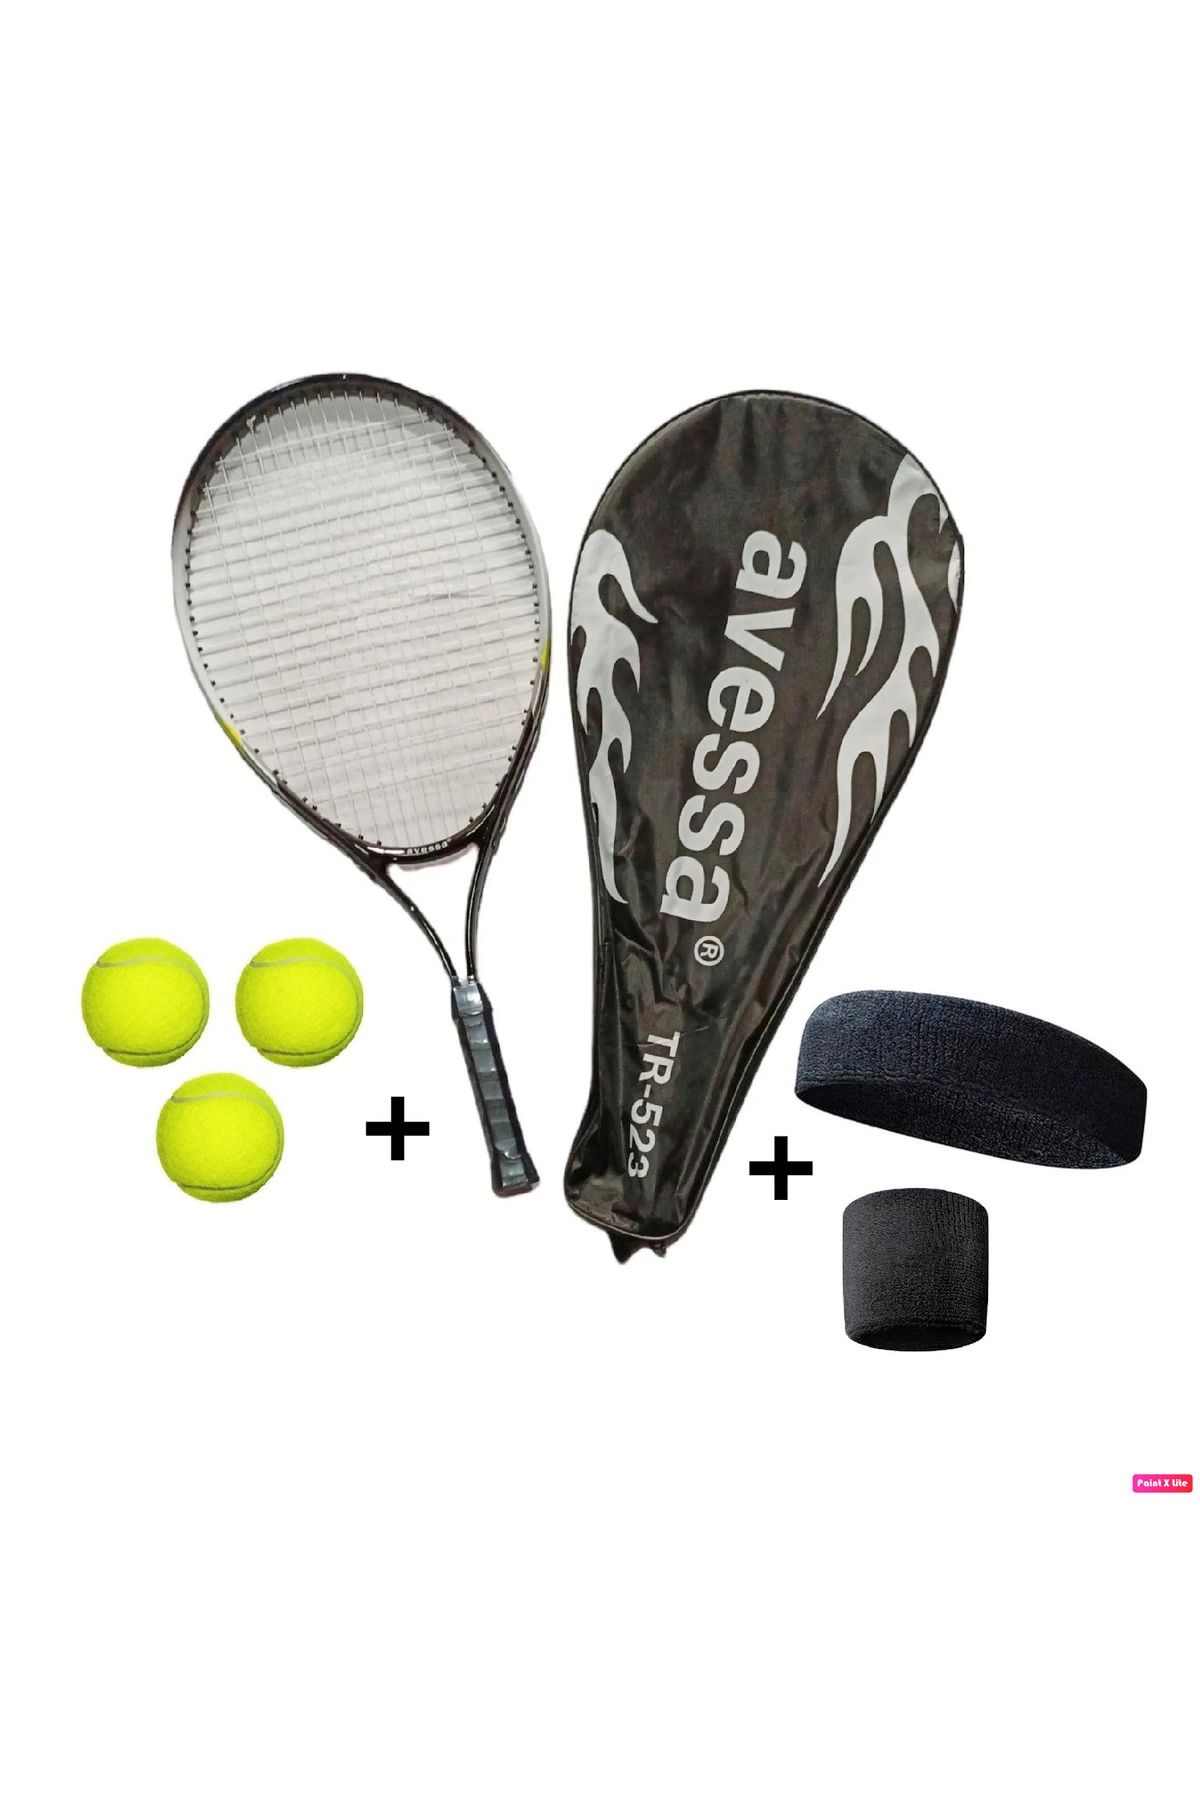 Avessa 4'lü Tenisçi Seti Tr-523 23 Inç 200 Gr + 3 Adet Tenis Topu + Havlu Kafa Bandı Ve Bileklik